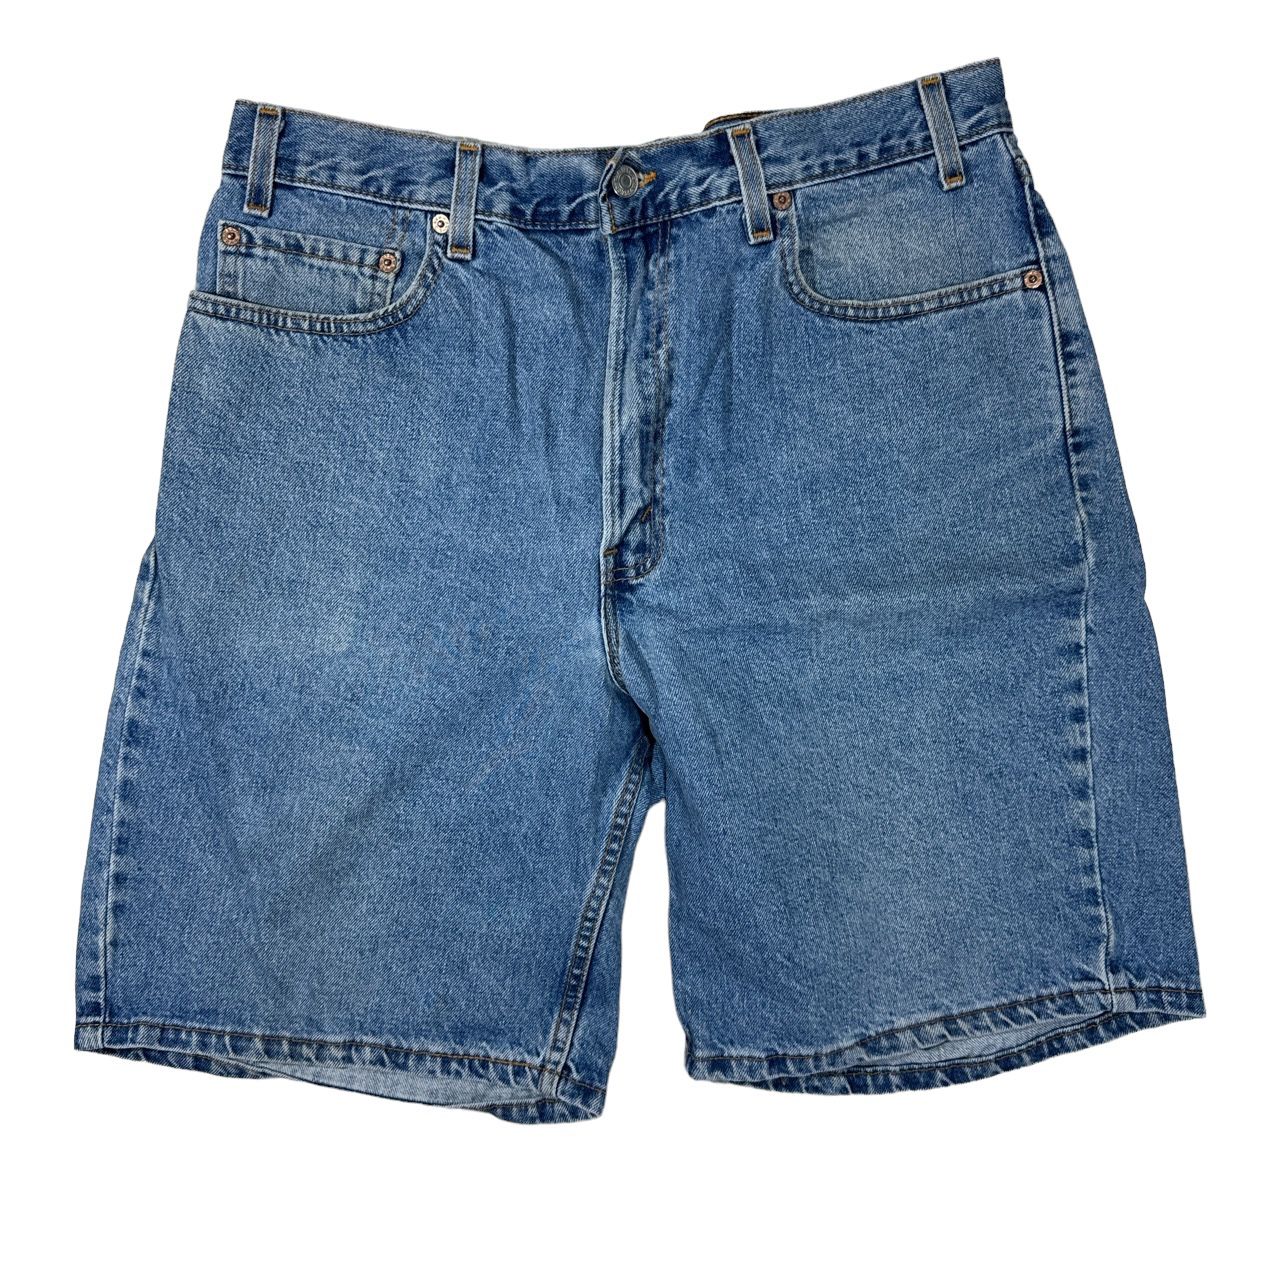 Vintage 1990s Levi’s 550 Denim Blue Jean Shorts